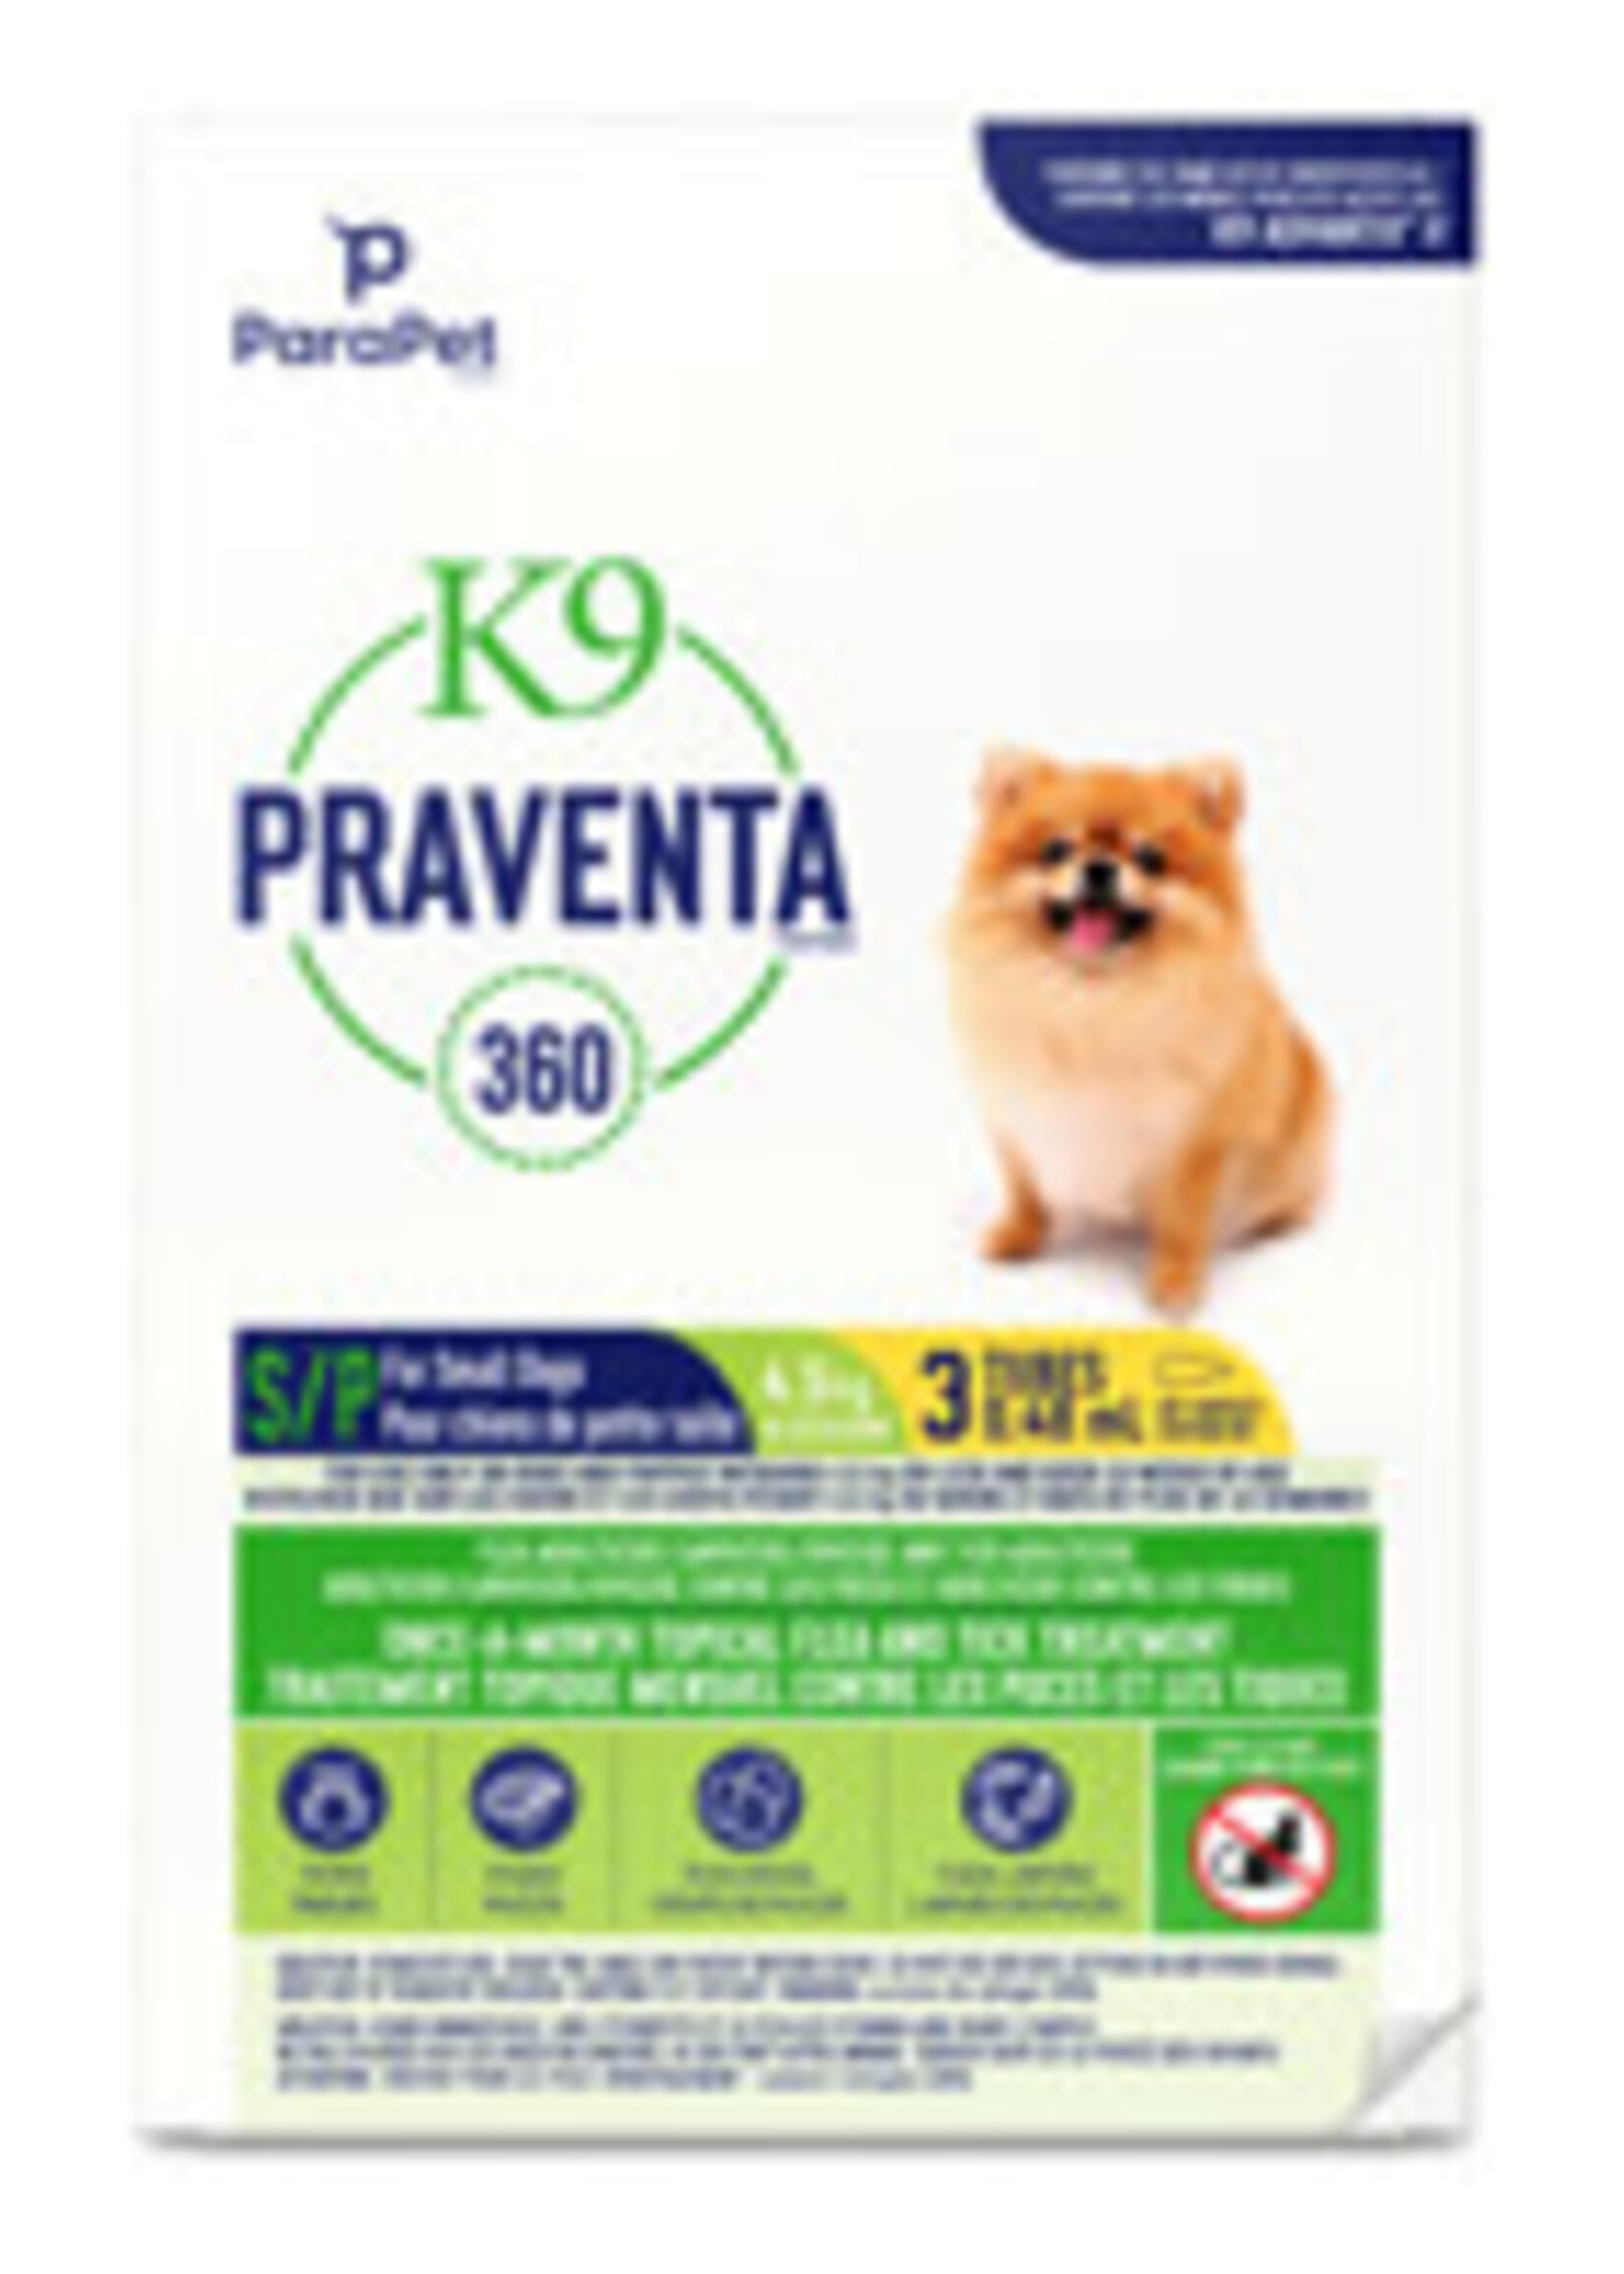 K9 Praventa PR K9 Praventa 360, S Dogs, 3 Tubes